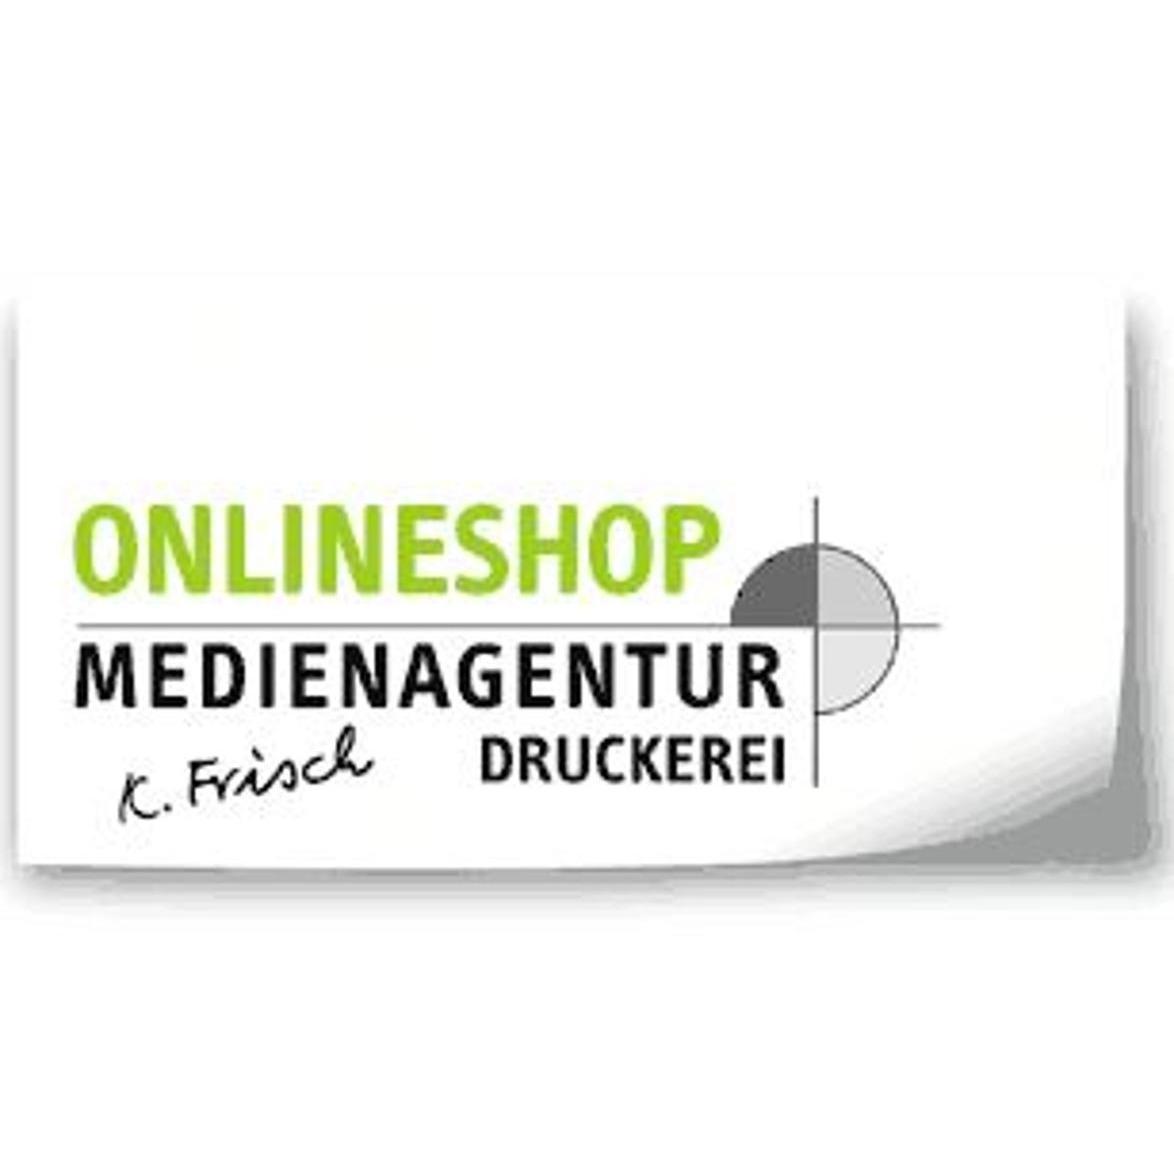 Medienagentur & Druckerei Frisch Logo